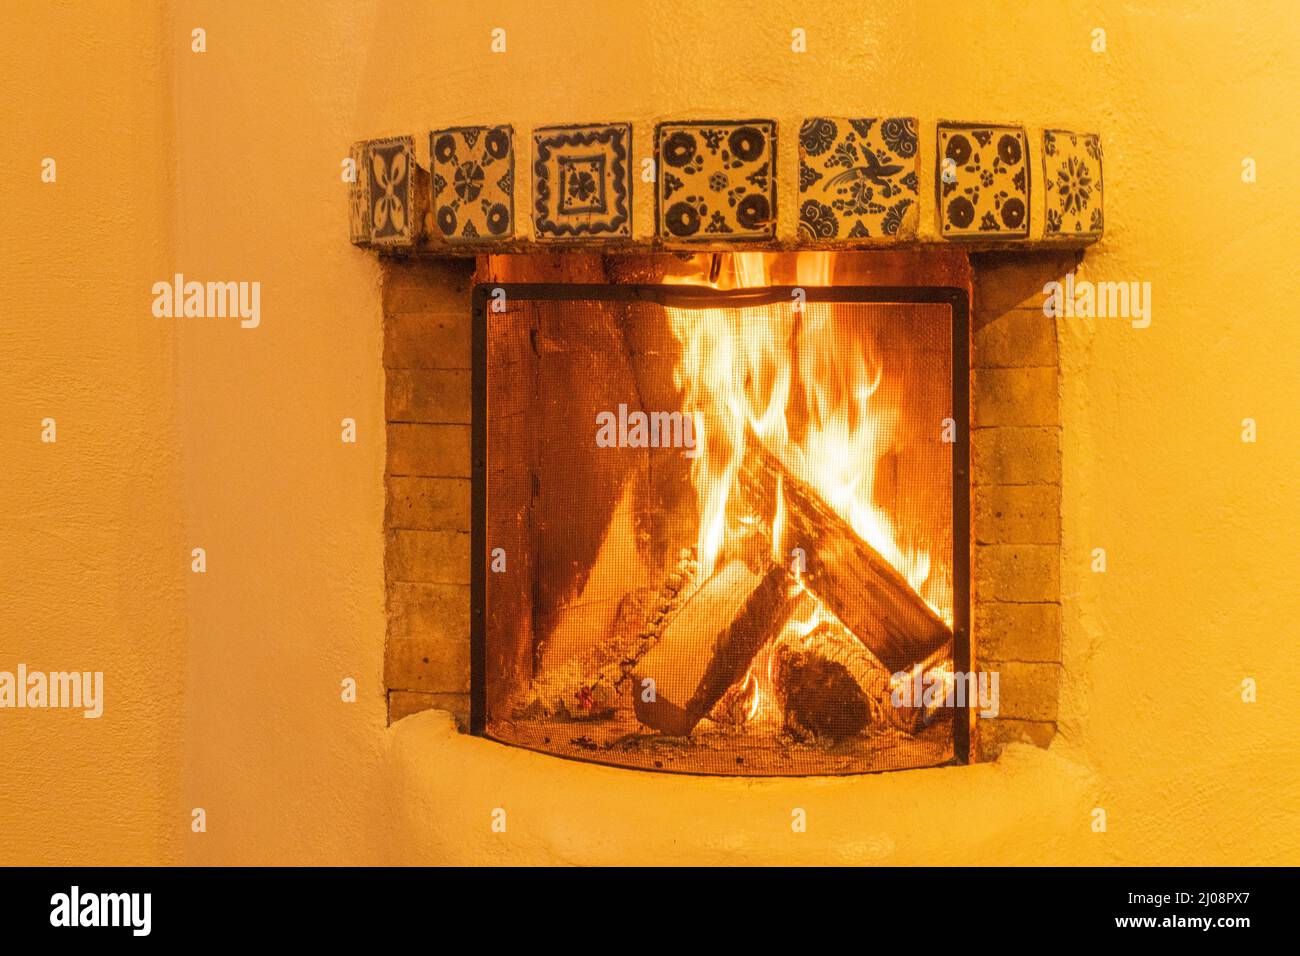 chimenea estilo kiva que quema troncos comunes en hogares en el suroeste de Estados Unidos con las paredes de adobe irradiando calor y proporcionar calidez acogedora Foto de stock